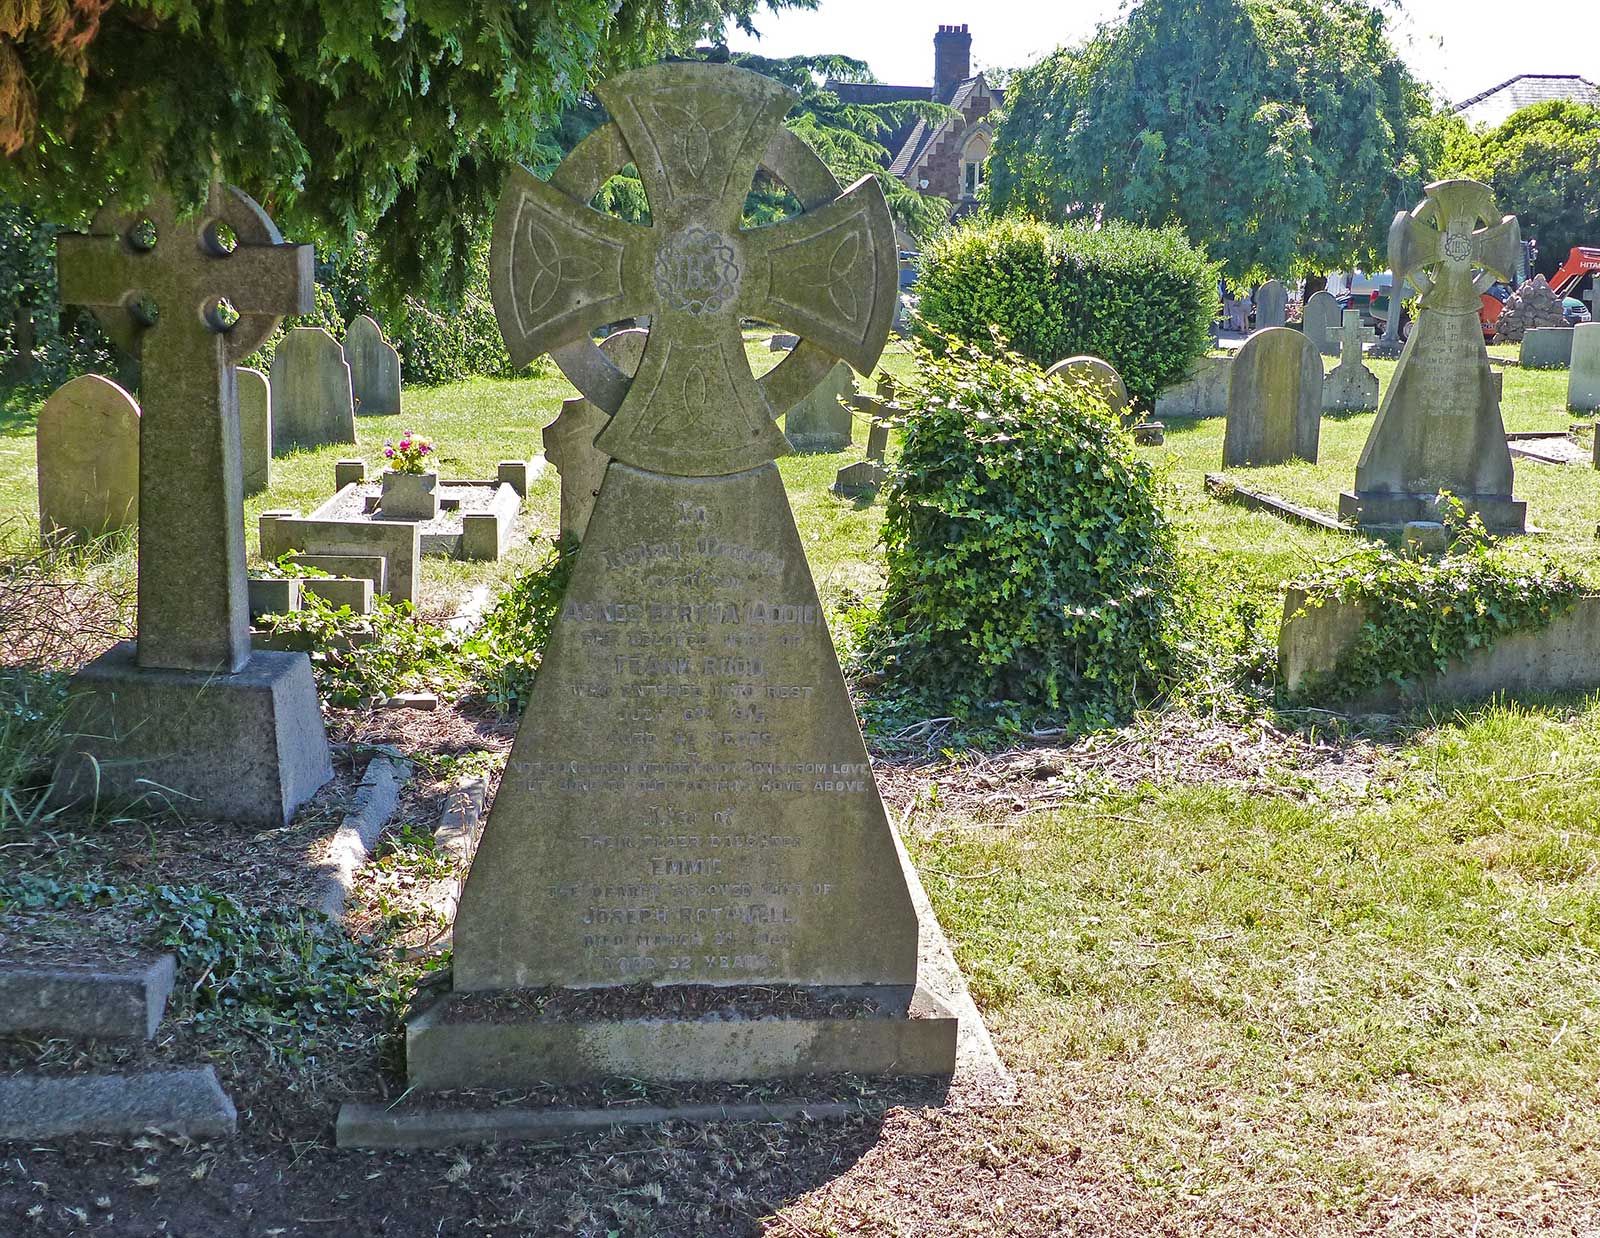 Emmie Rudd's memorial in Great Malvern Cemetery